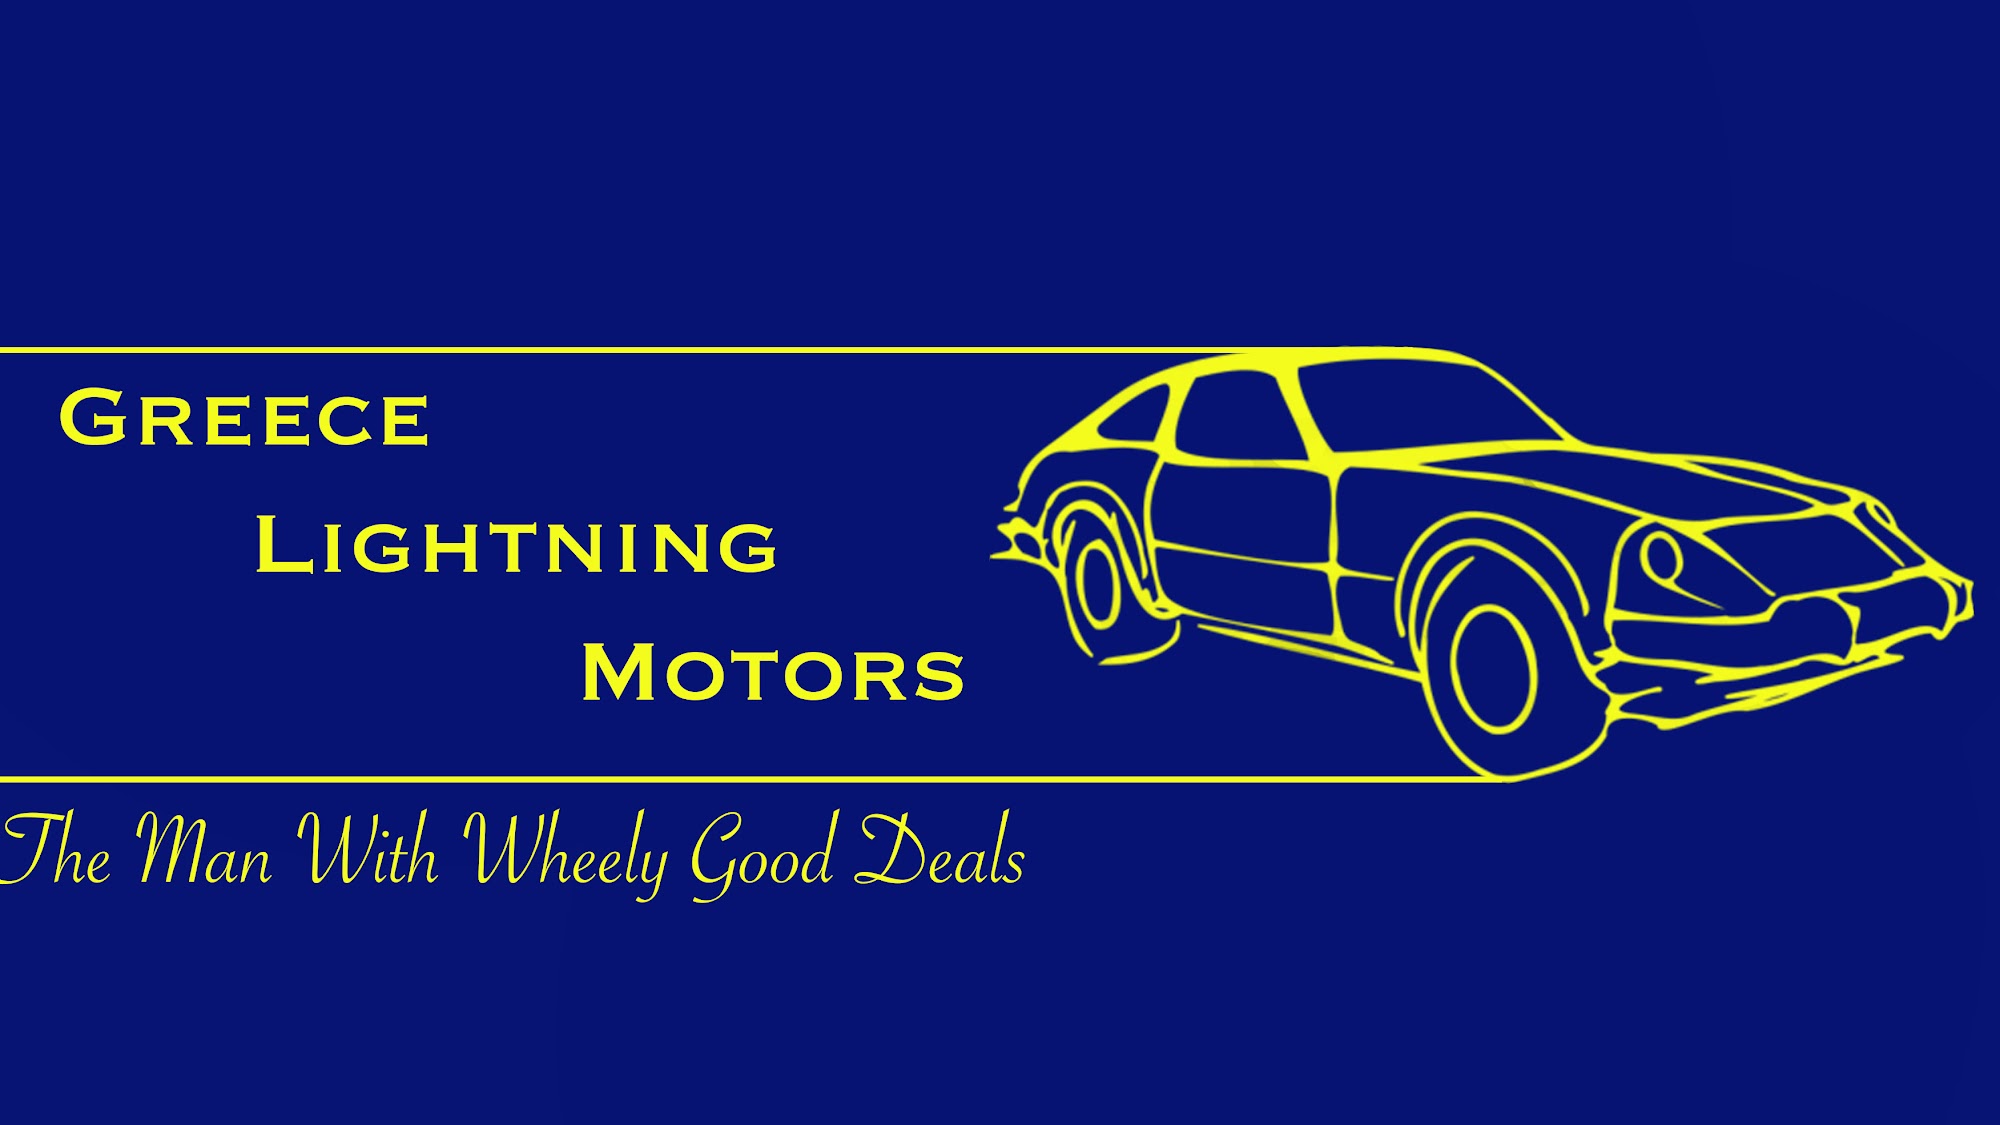 Greece Lightning Motors